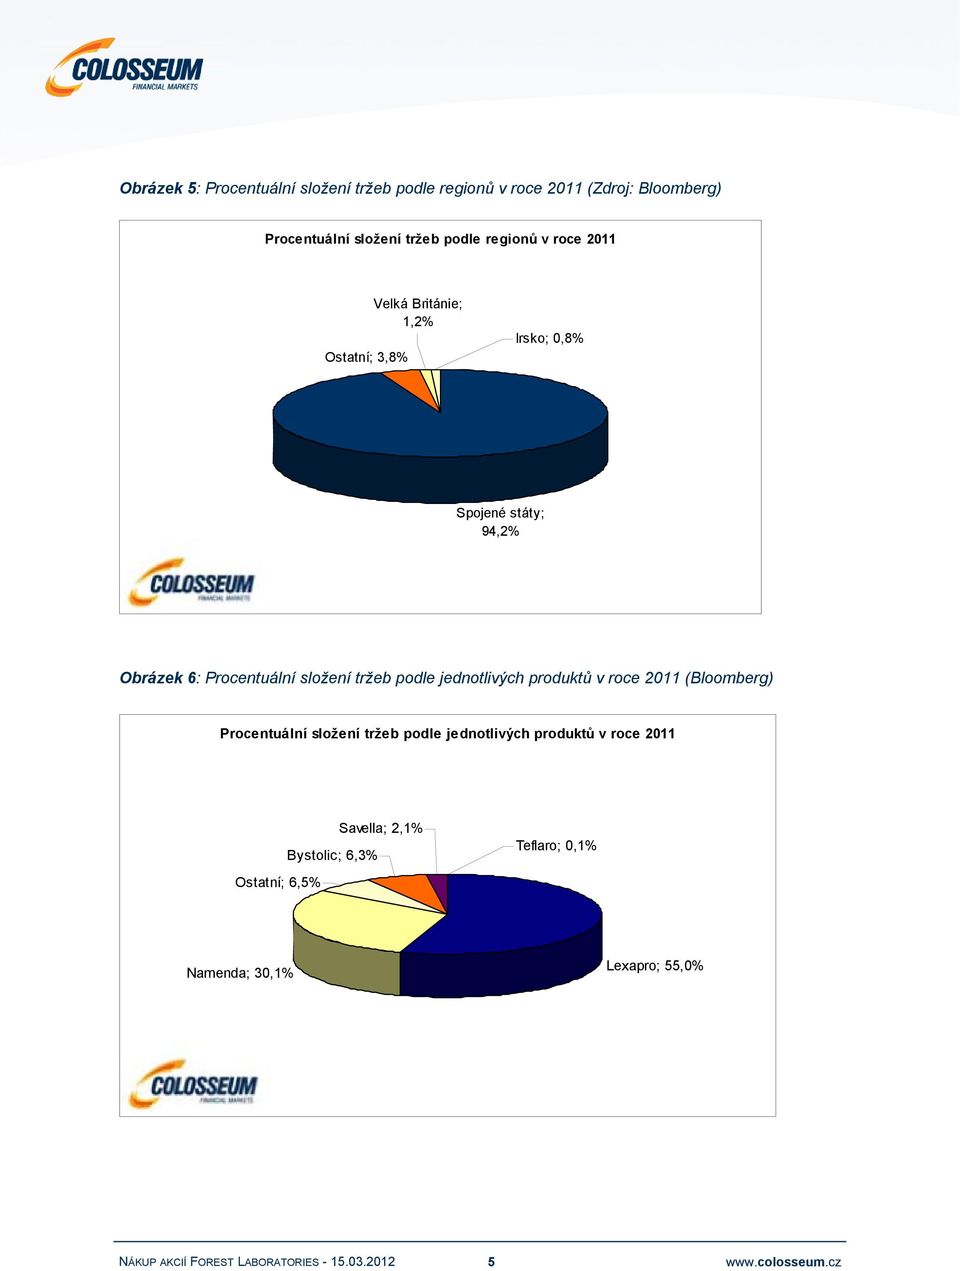 Procentuální složení tržeb podle jednotlivých produktů v roce 2011 (Bloomberg) Procentuální složení tržeb podle